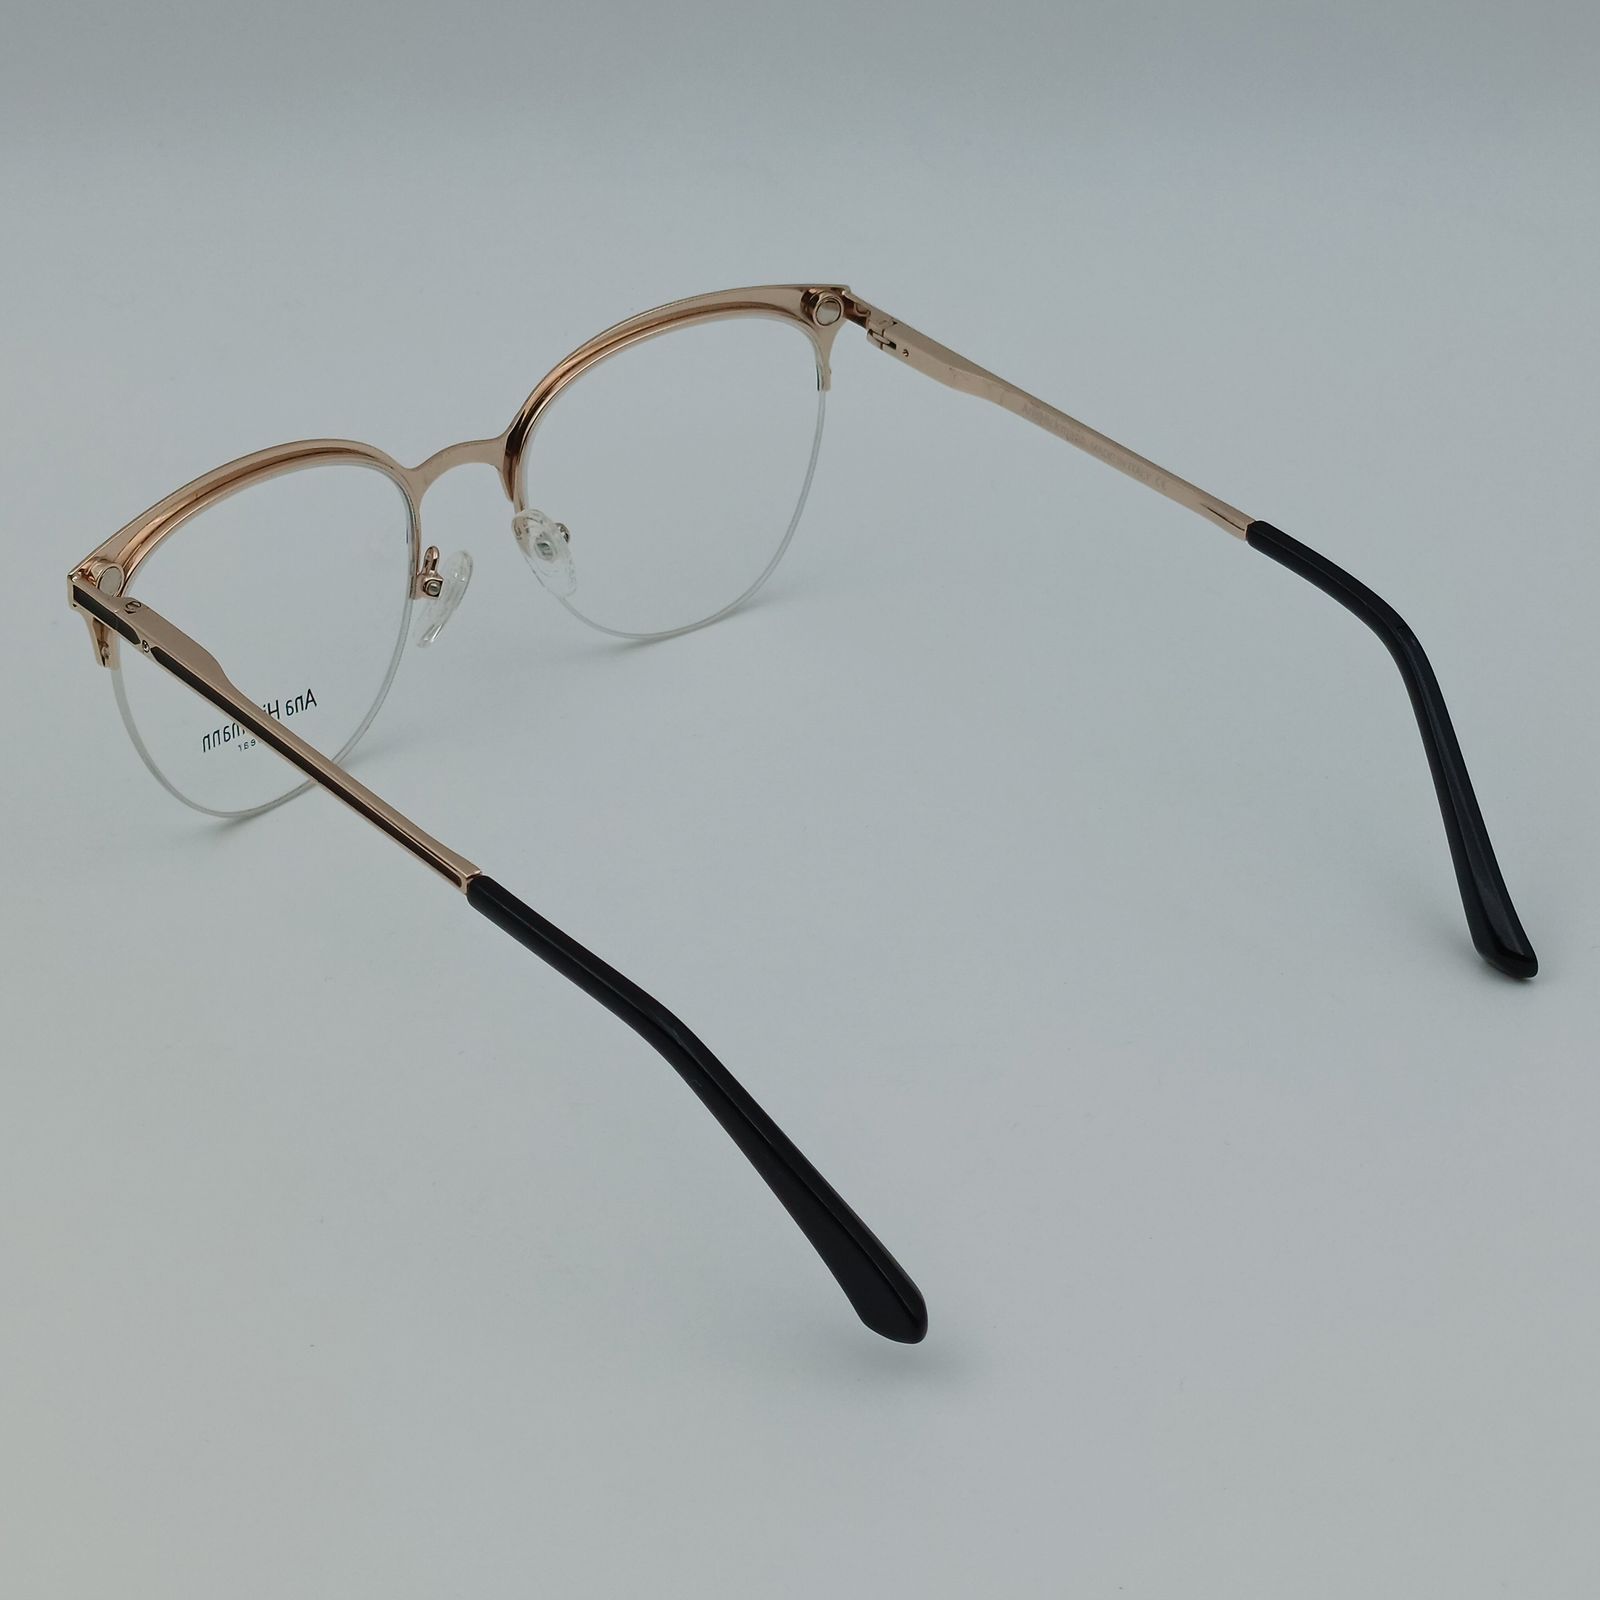 فریم عینک طبی زنانه آناهیکمن مدل FNA003 C1 به همراه کاور آفتابی -  - 7